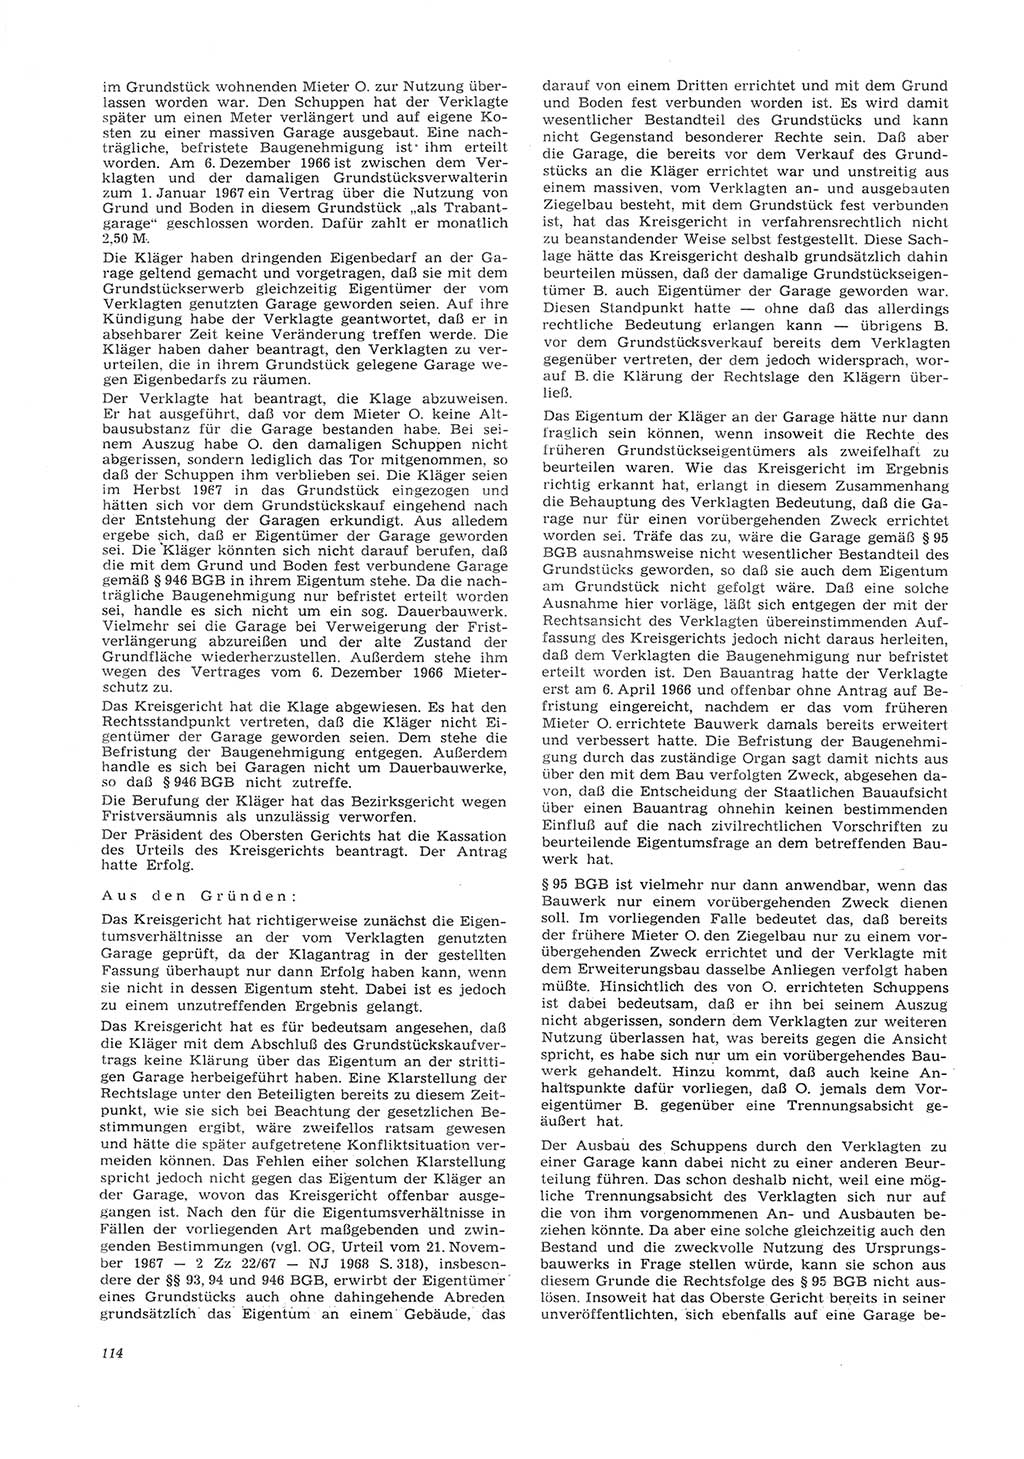 Neue Justiz (NJ), Zeitschrift für Recht und Rechtswissenschaft [Deutsche Demokratische Republik (DDR)], 26. Jahrgang 1972, Seite 114 (NJ DDR 1972, S. 114)